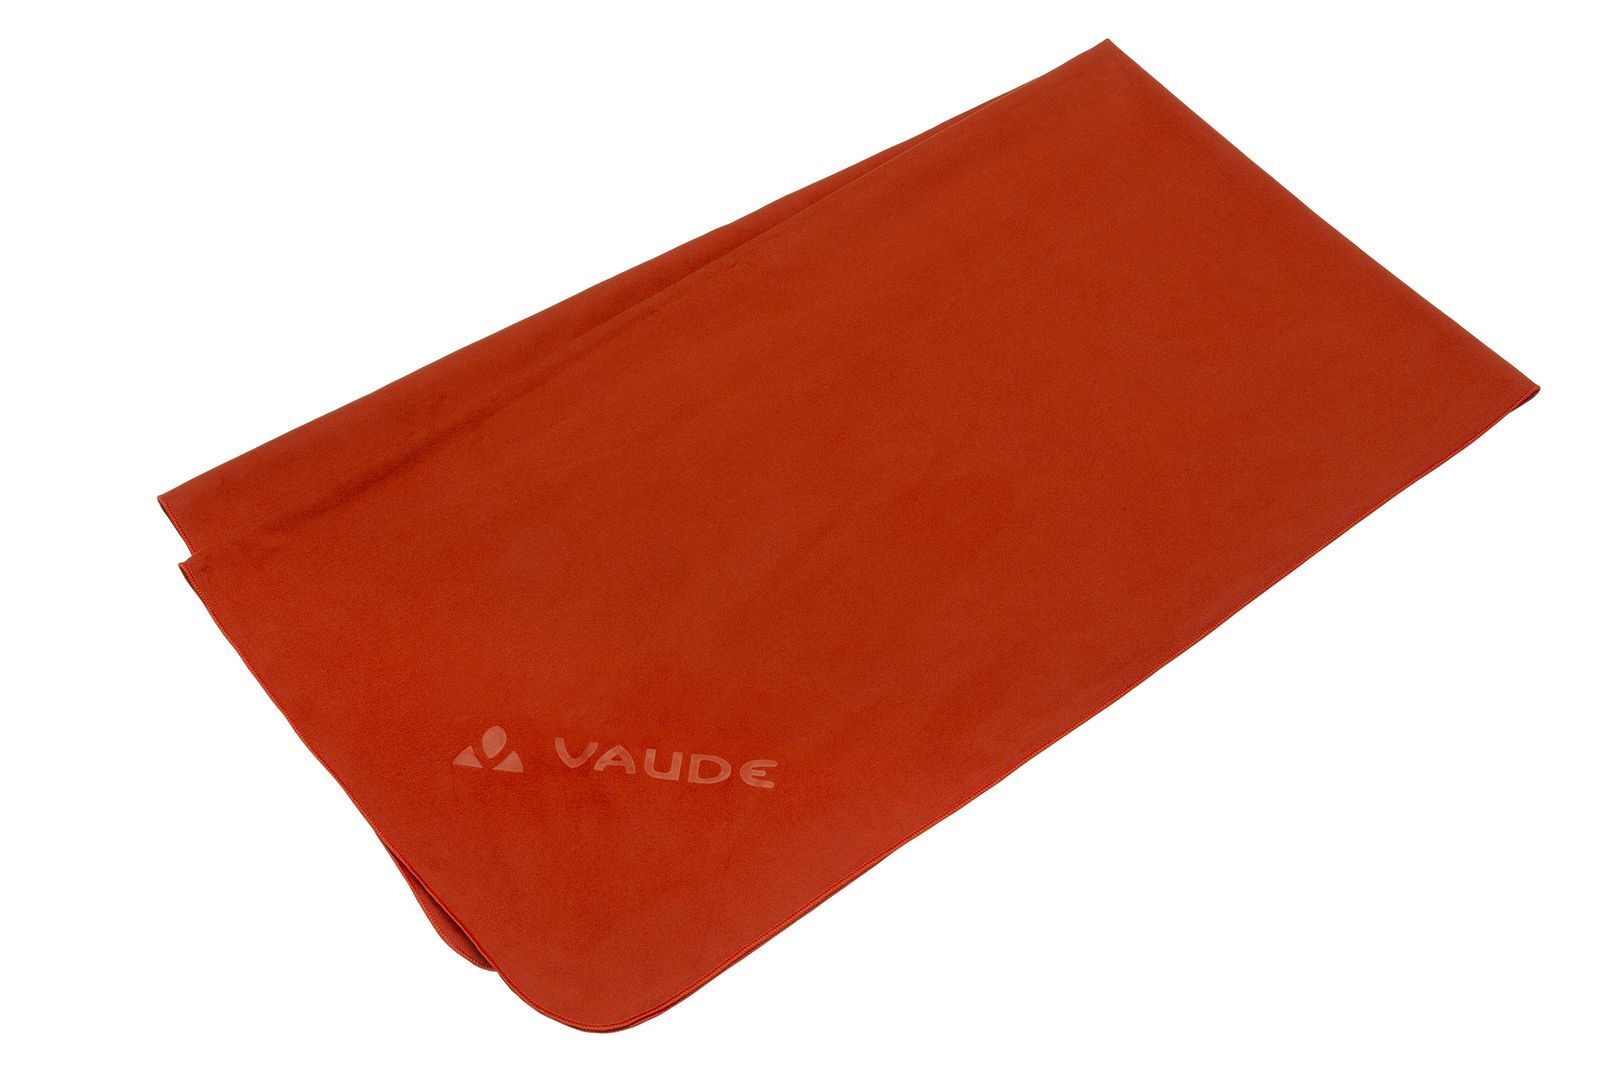 Vaude Sports Towel III - Microfiber towel